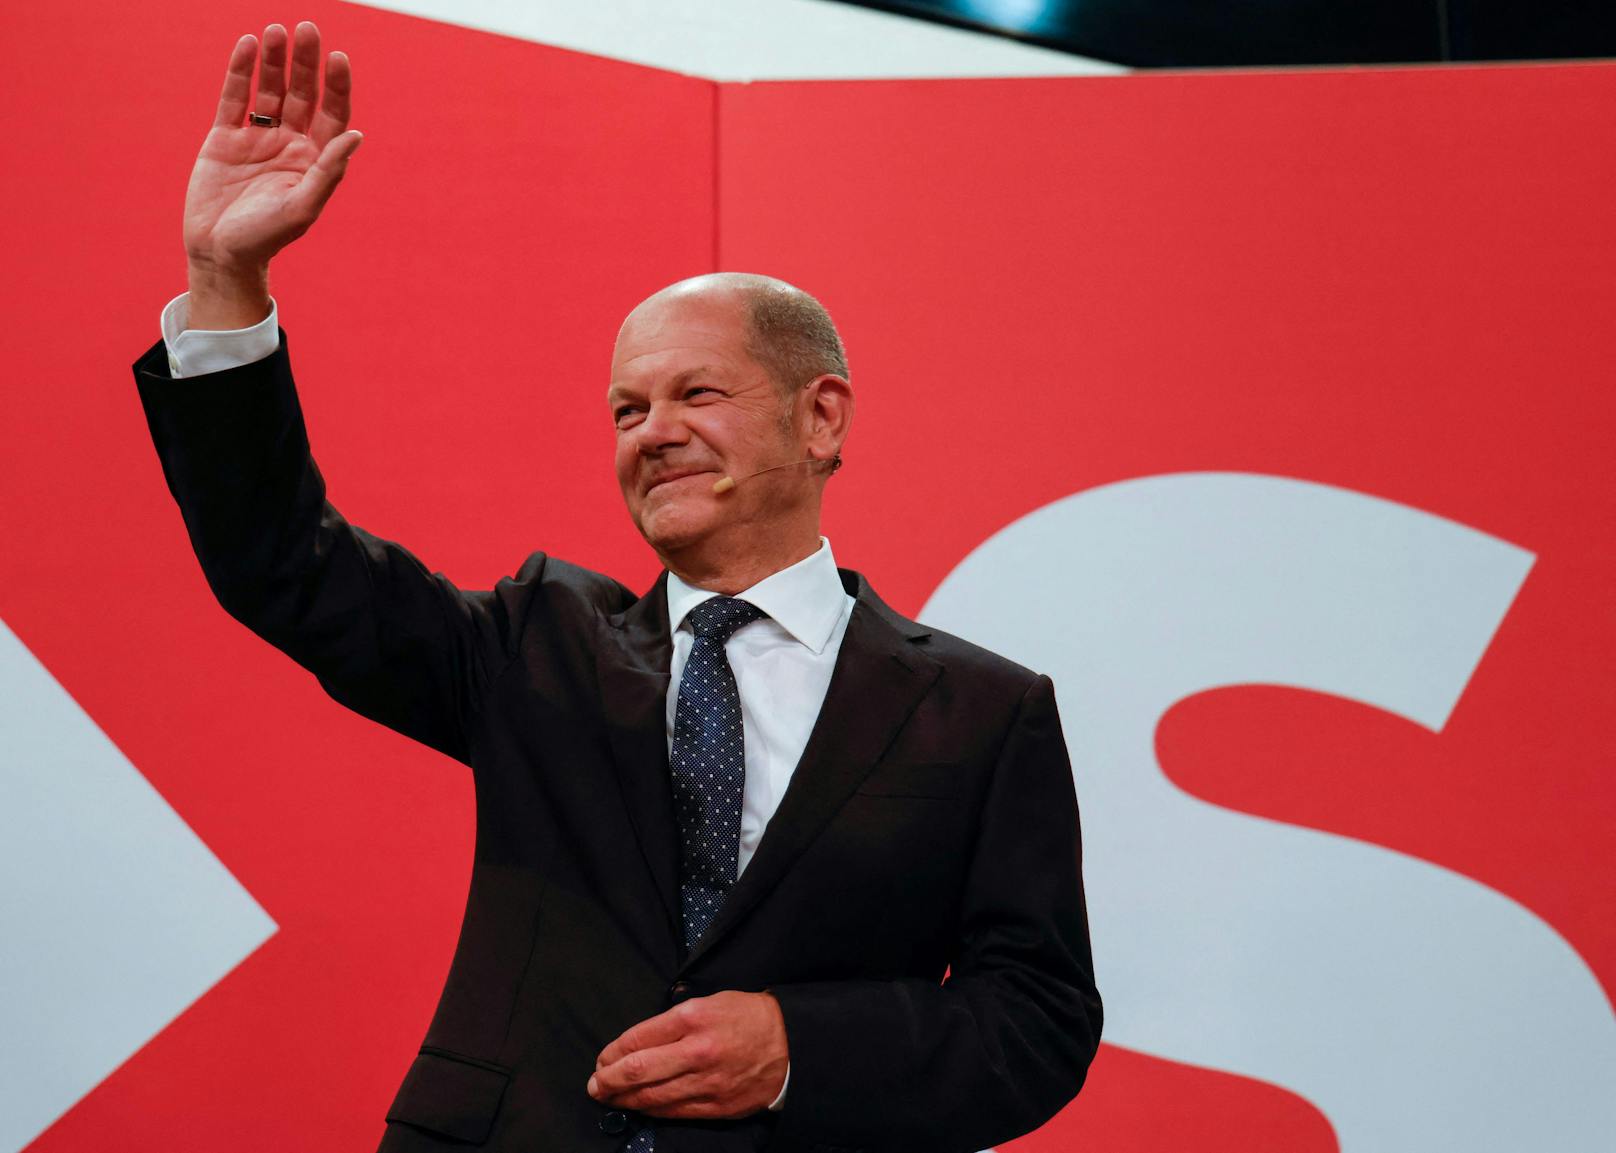 Die Bundestagswahl hat die SPD nach dem Ergebnis der Auszählung aller Wahlkreise mit 25,7 Prozent gewonnen.